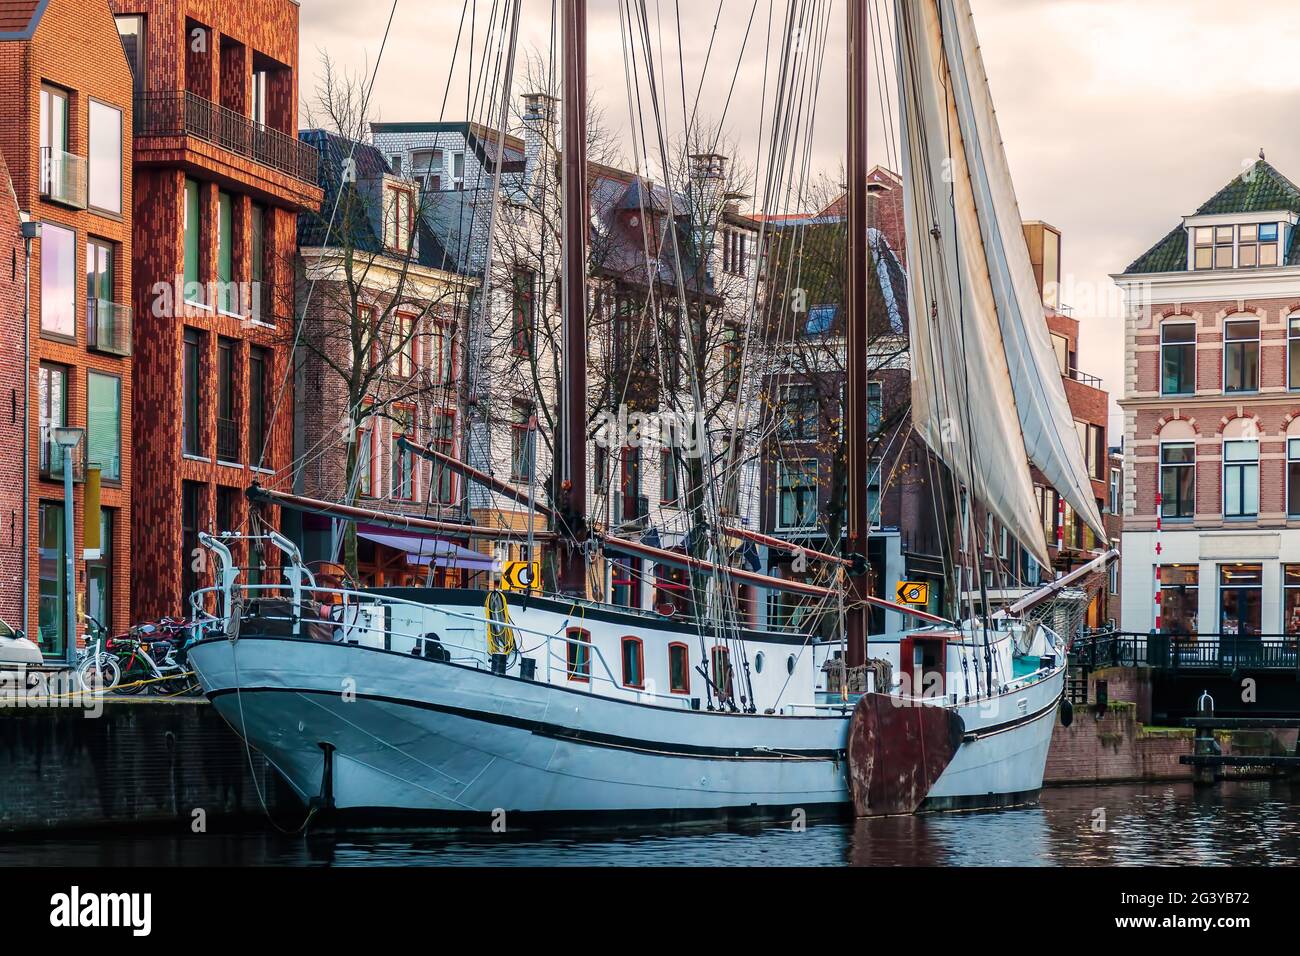 Ancien voilier dans un canal dans le centre-ville de Groningen, pays-Bas Banque D'Images